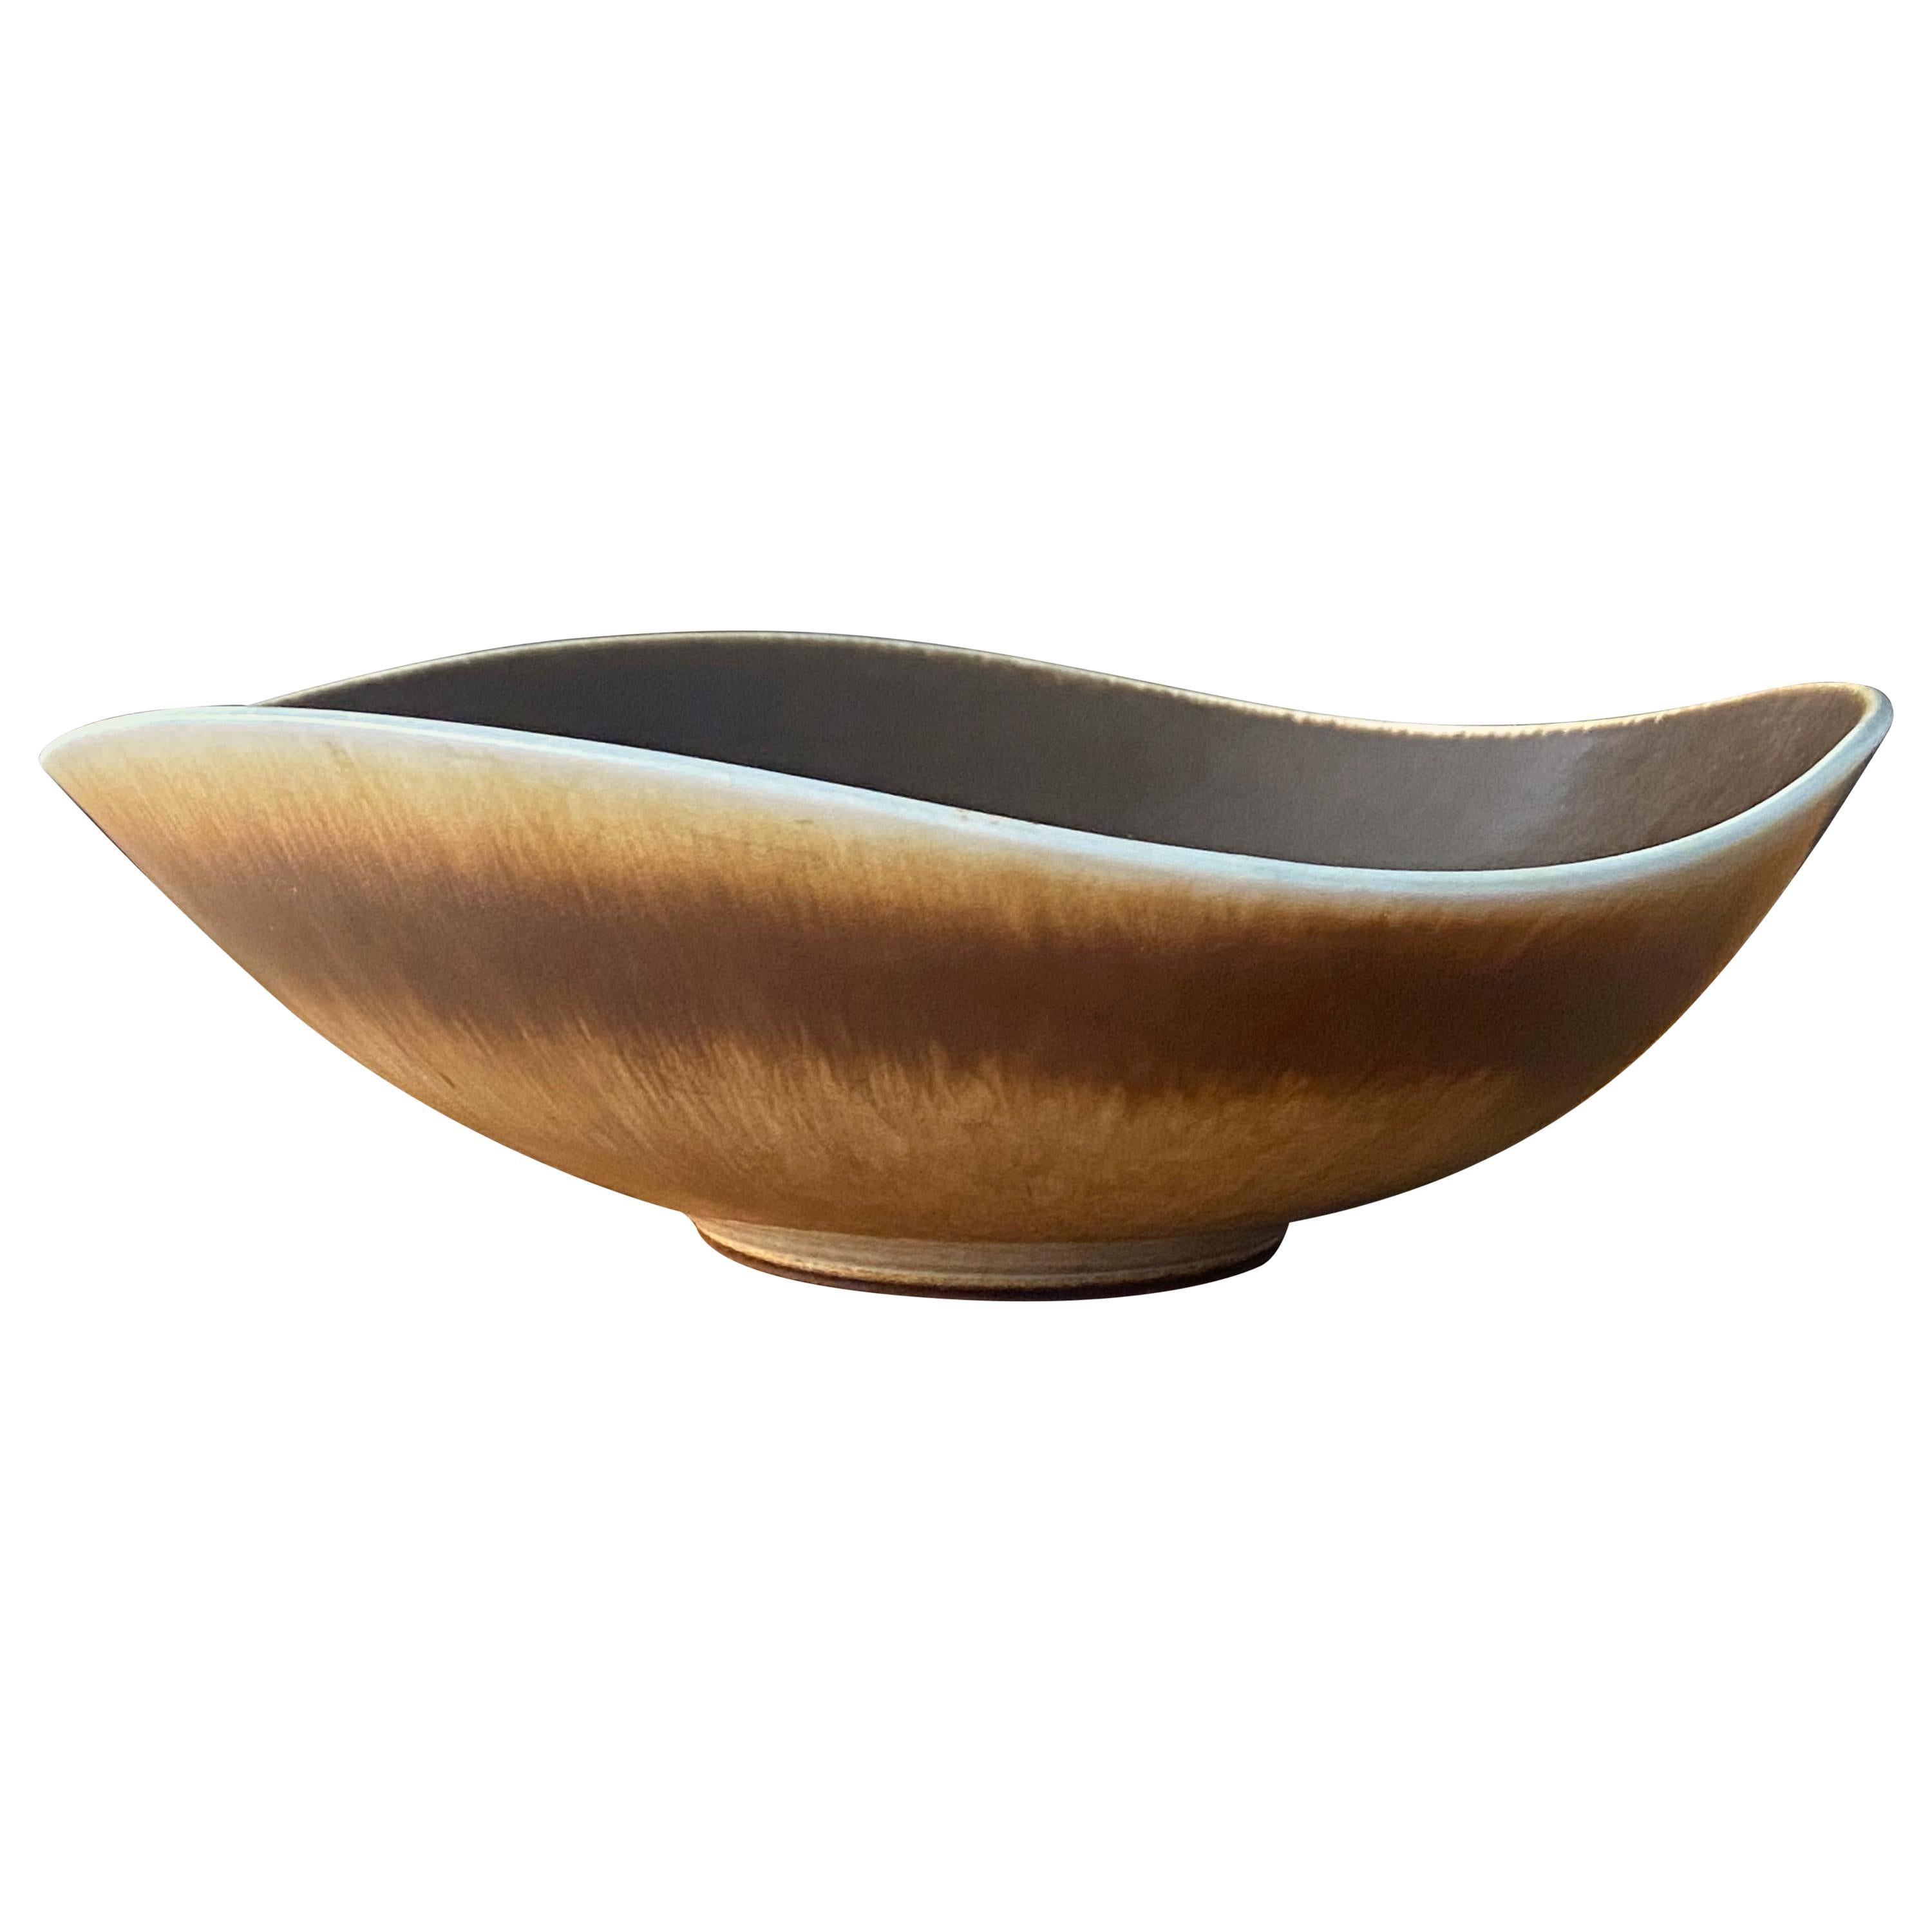 Berndt Friberg Vase, Organic Bowl, Brown Glazed Stoneware, Gustavsberg, 1970s